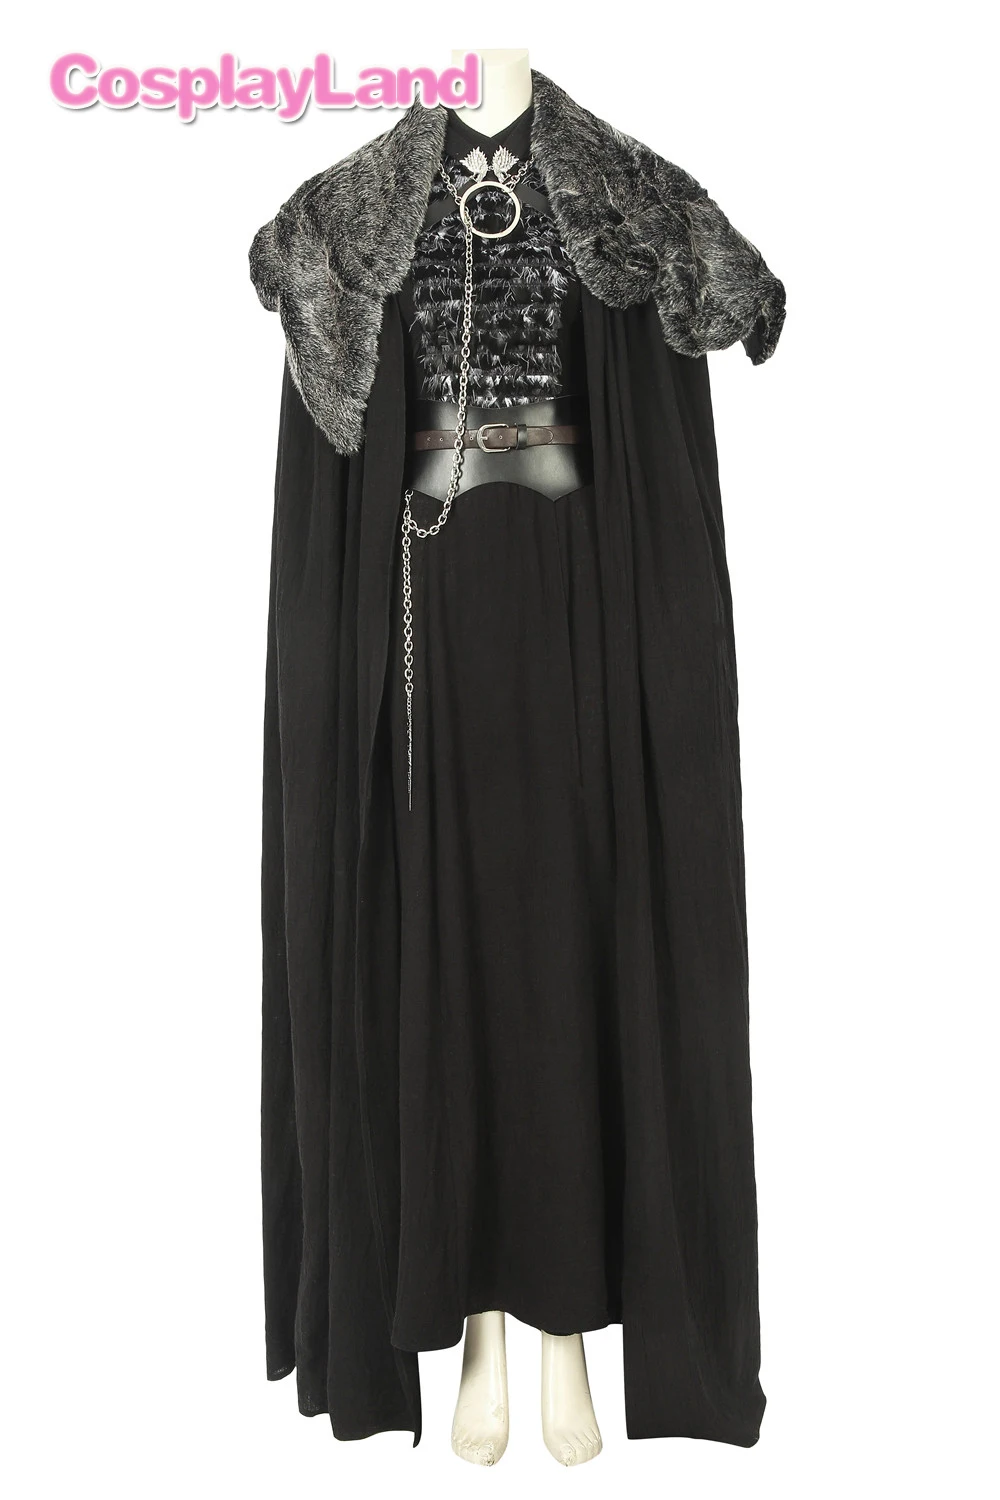 Костюм для косплея «Игра престолов 8 сезона Санса Старк» с воротником, вечерние костюмы на Хэллоуин, пальто для косплея Санса Старк